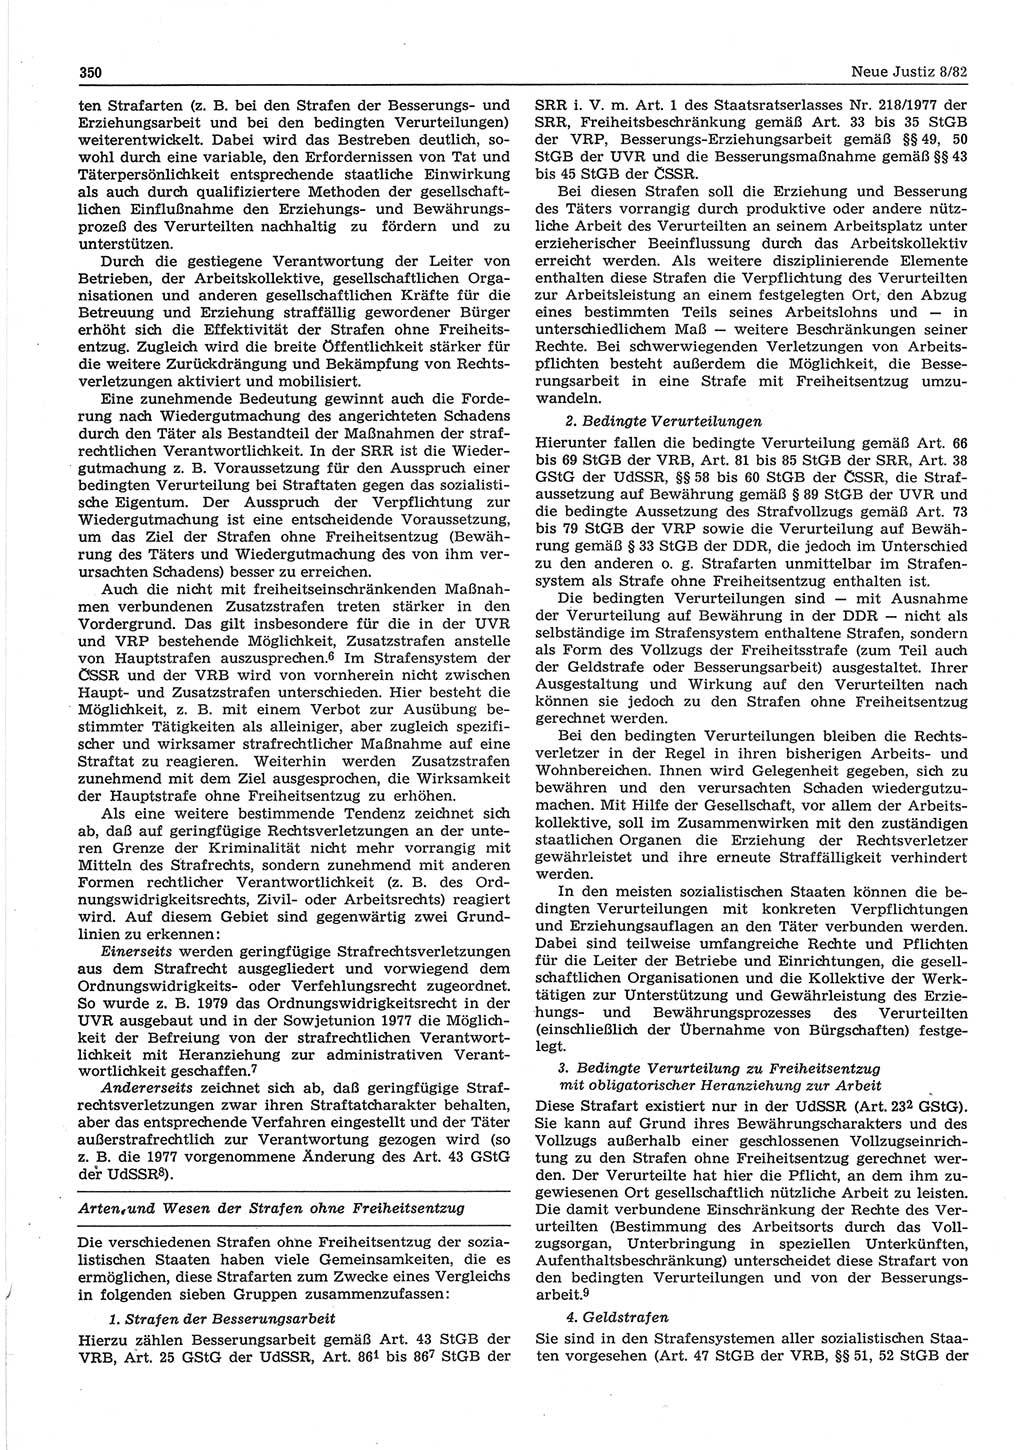 Neue Justiz (NJ), Zeitschrift für sozialistisches Recht und Gesetzlichkeit [Deutsche Demokratische Republik (DDR)], 36. Jahrgang 1982, Seite 350 (NJ DDR 1982, S. 350)